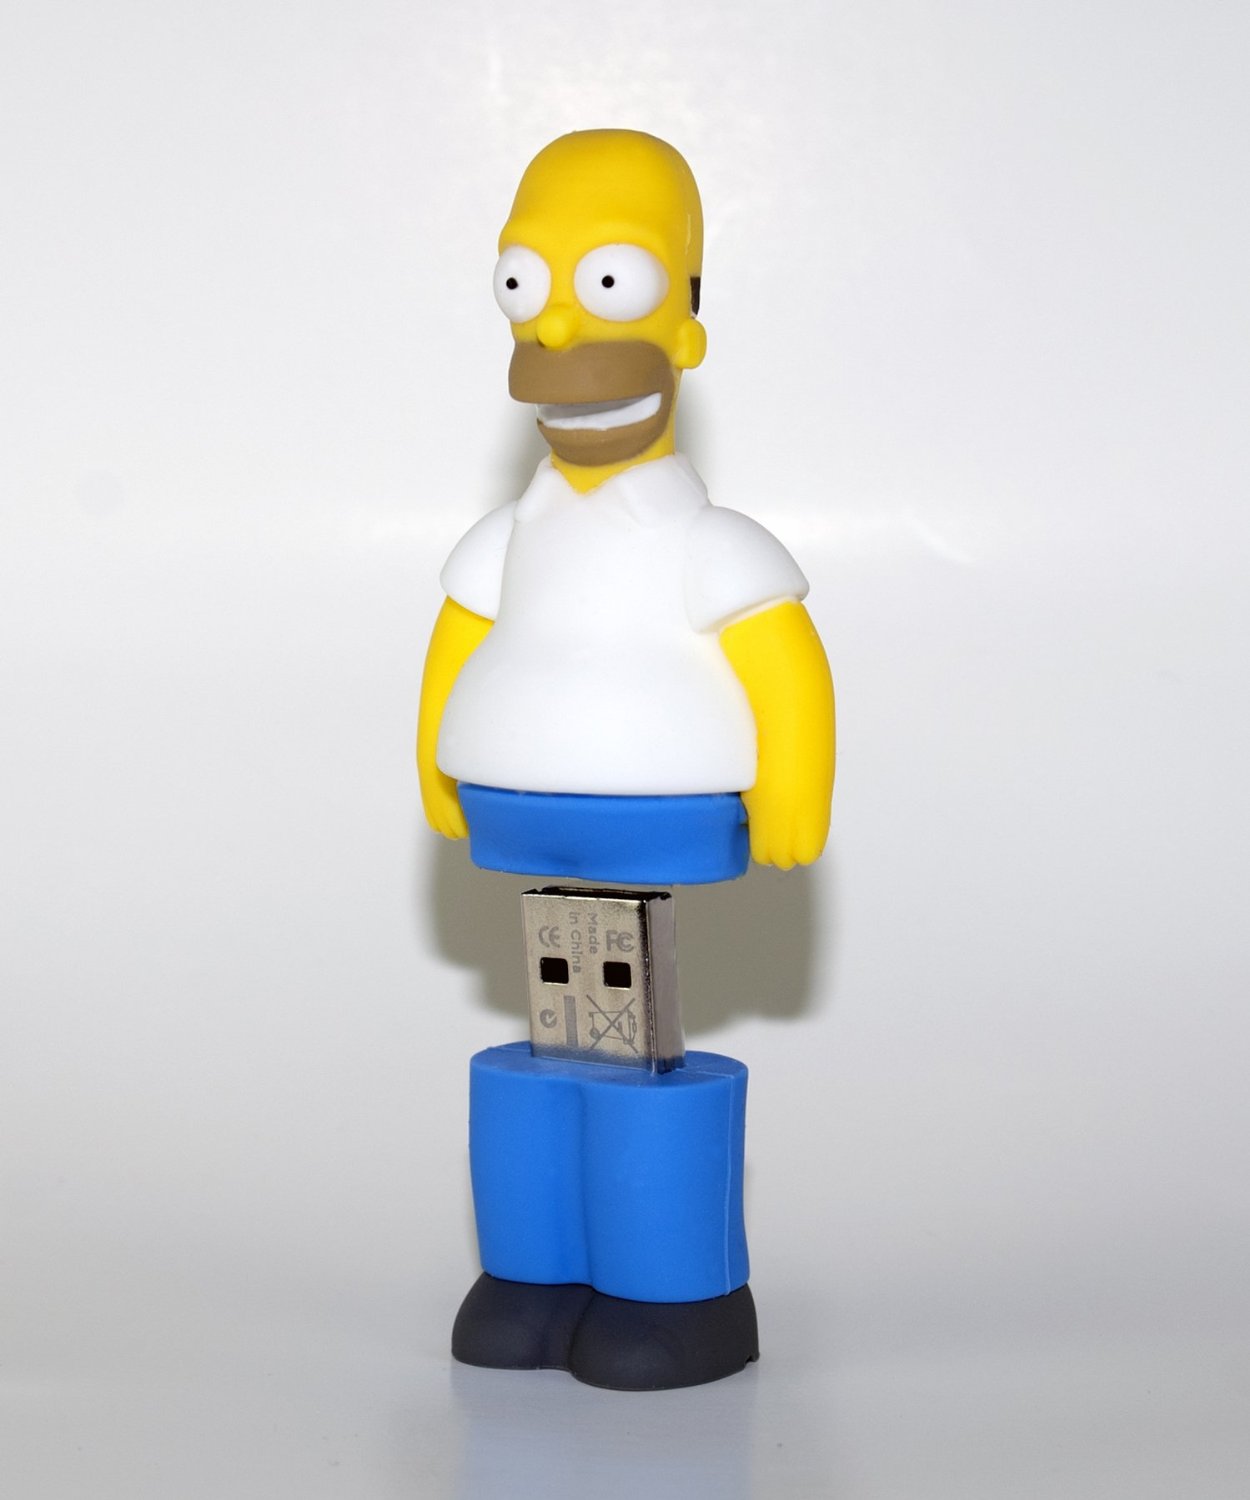 Memorias USB de 16 GB de los Simpsons